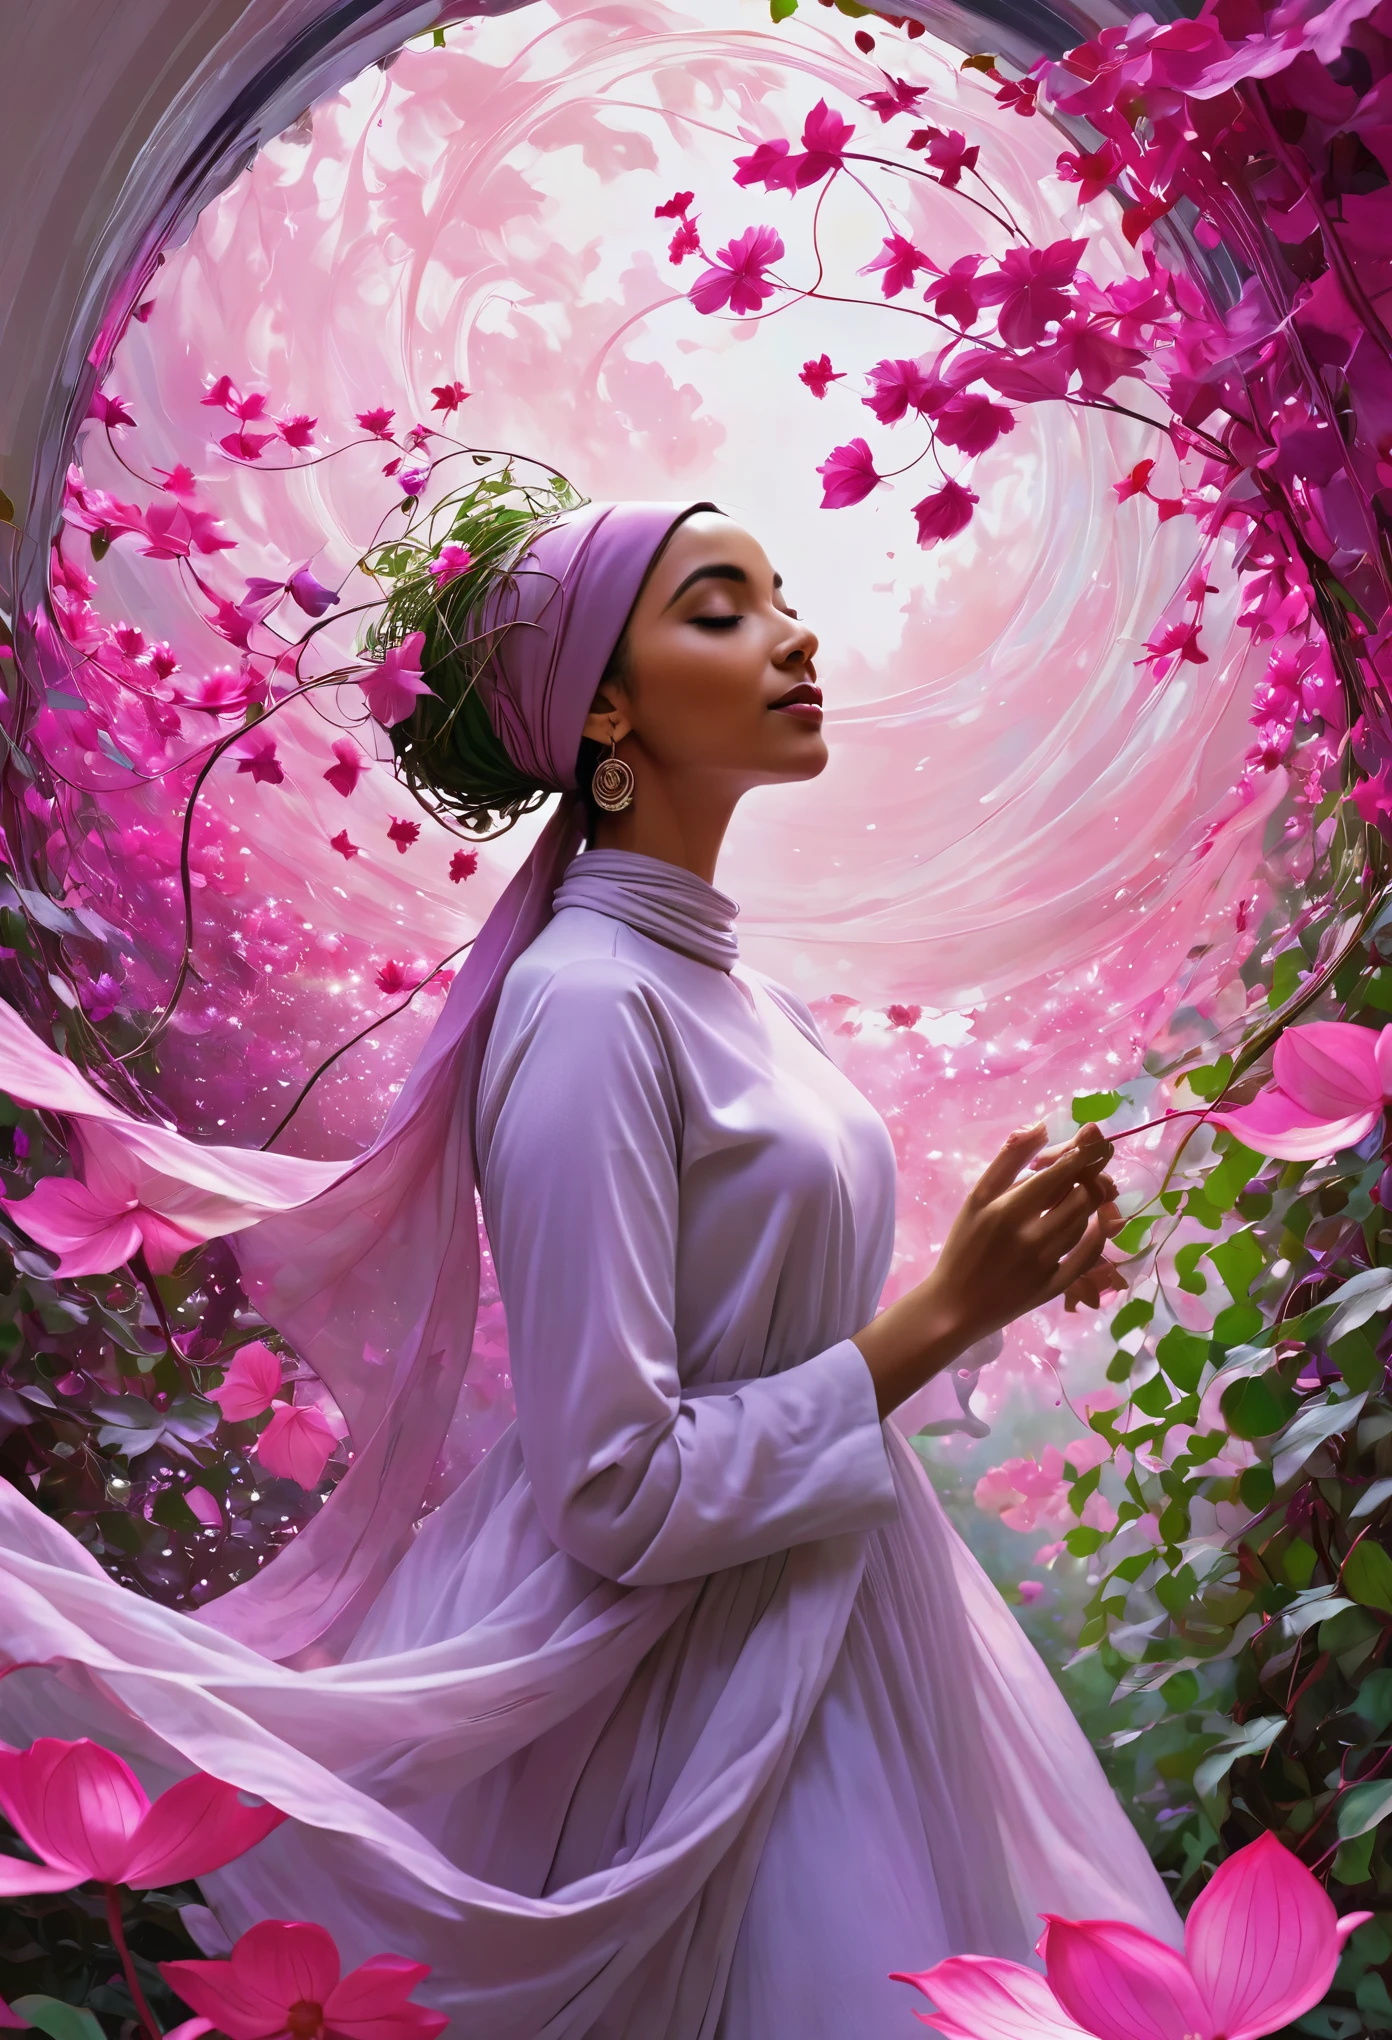 schöner Hijab Ein fesselndes digitales Gemälde, inspiriert vom unverkennbaren Stil von Norman Rockwell, mit einer heiteren jungen Frau, die inmitten eines wirbelnden Tanzes aus rosa und lila Blüten, Blättern und Ranken steht. Sie ist umgeben von einem pflanzlichen Wesen, mit ineinander verschlungenen Wurzeln und Blüten, ein Gefühl von Tiefe und Bewegung erzeugen. Die Frau strahlt Entschlossenheit und Ruhe aus, als wäre sie vollkommen im Einklang mit dem natürlichen Rhythmus des Universums. Das Gesamtambiente des 